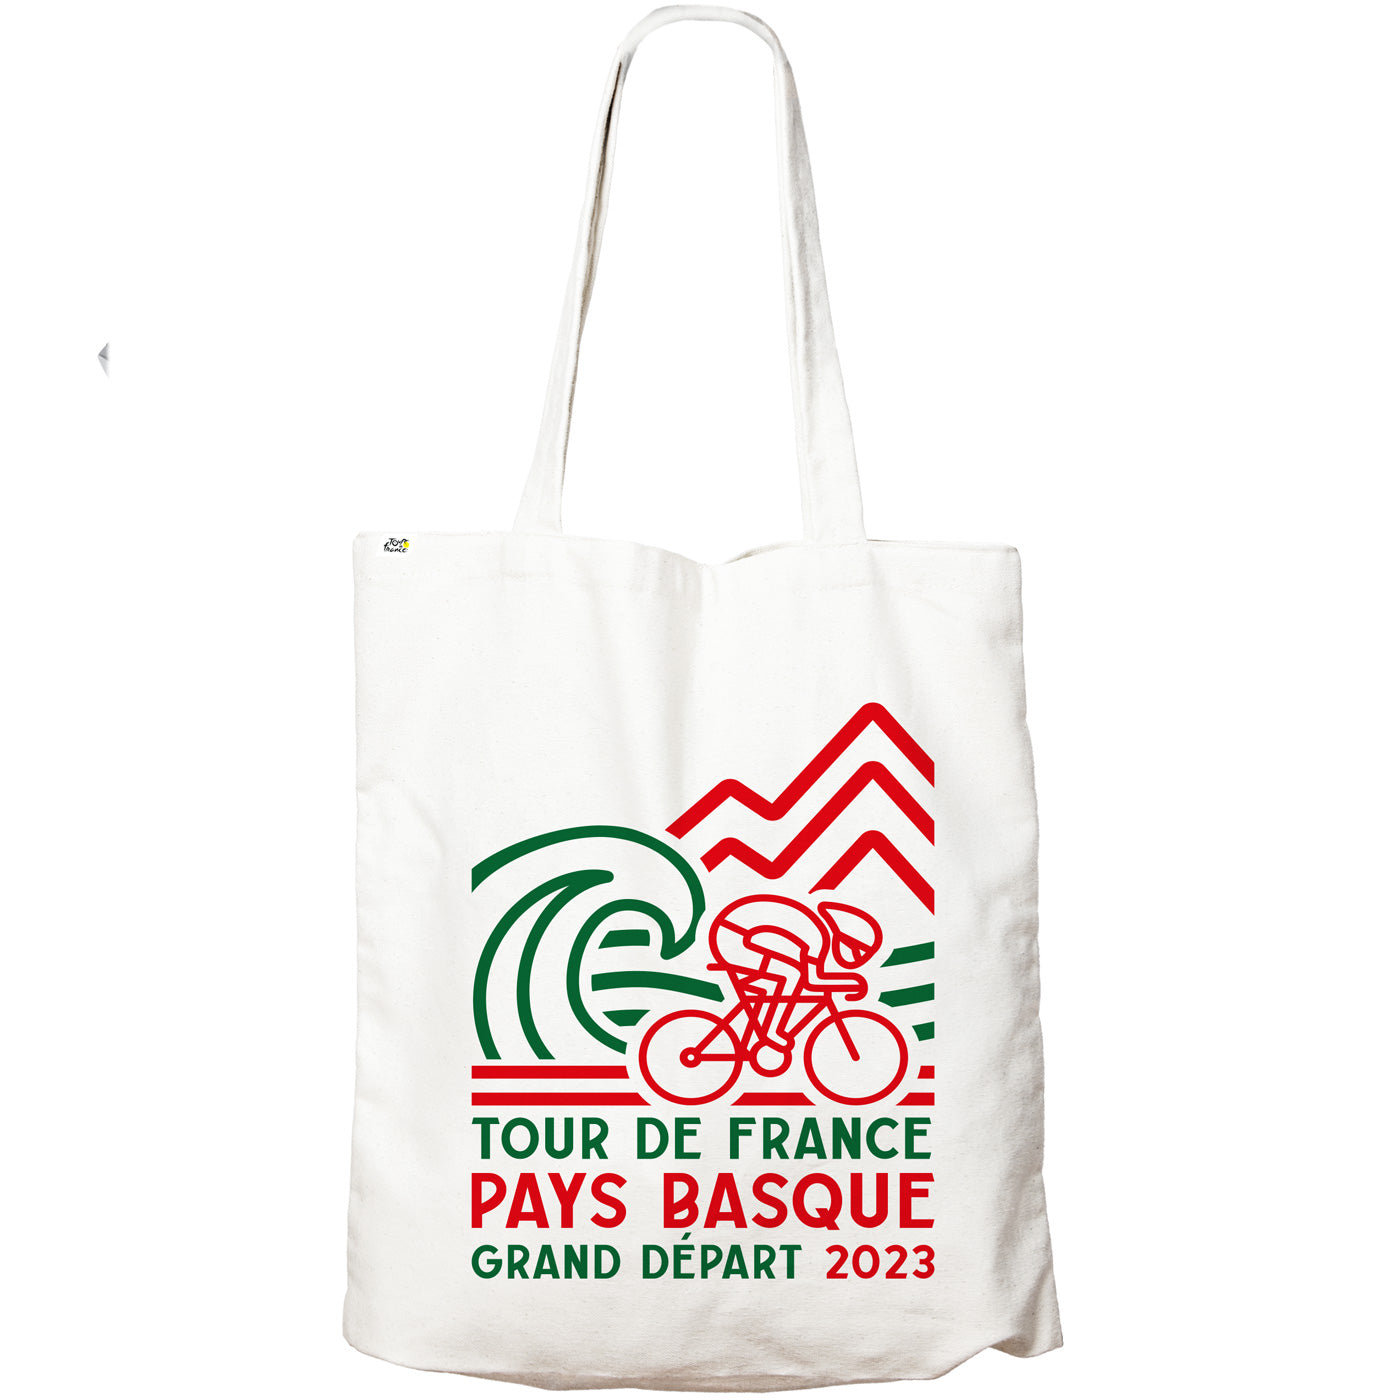 Tour de France 2023 baumwolltasche - Grand Depart Euskadi